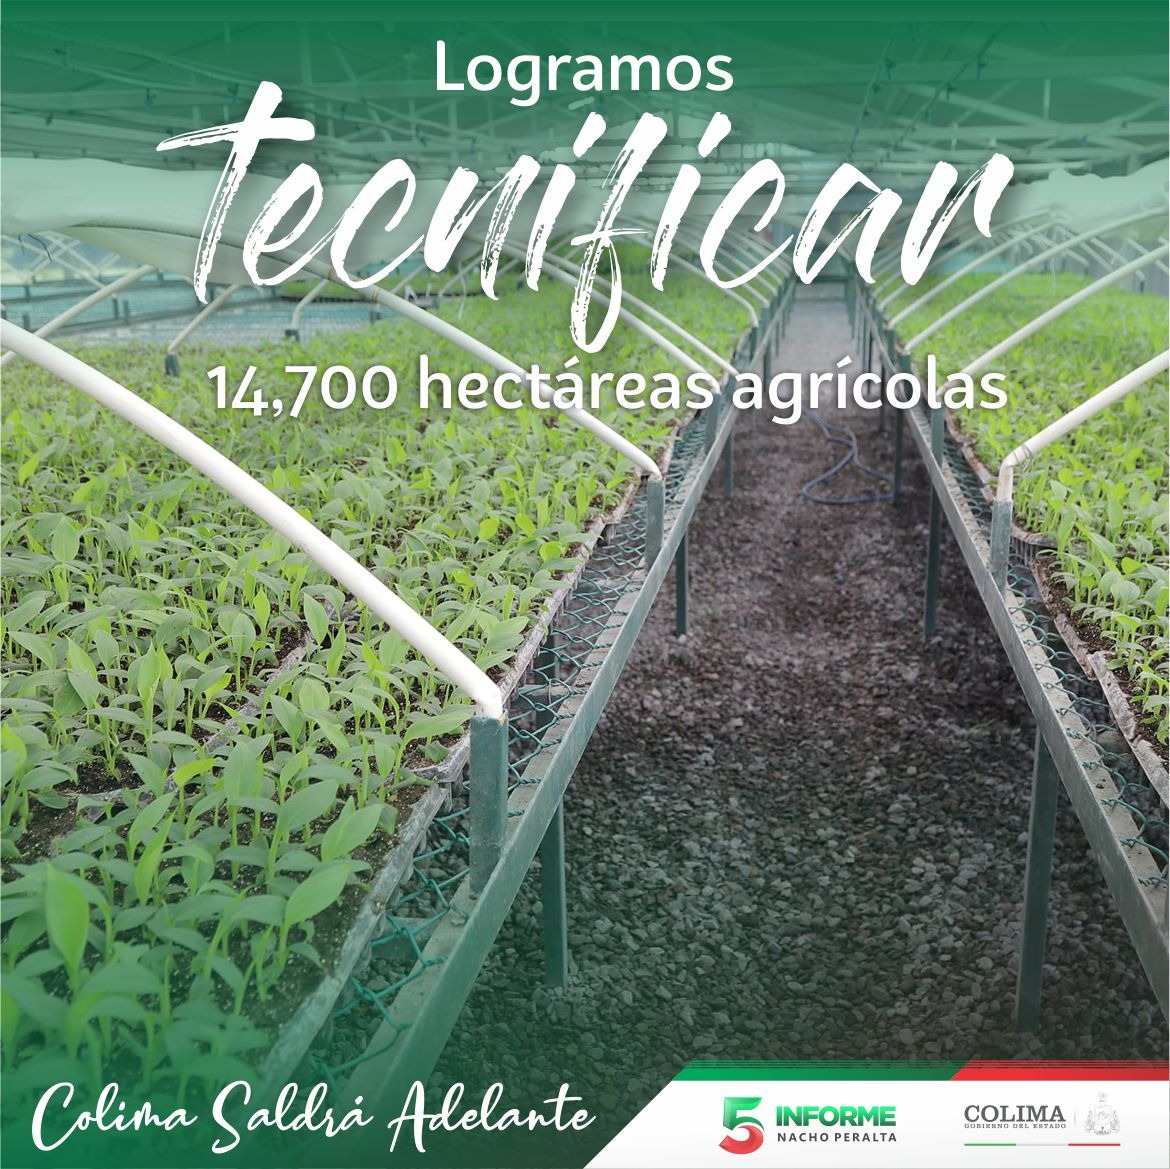 Con la tecnificación de más de 14,700 hectáreas agrícolas, impulsamos la modernización y productividad del campo colimense. 
#ColimaSaldráAdelante #5toInformeNacho